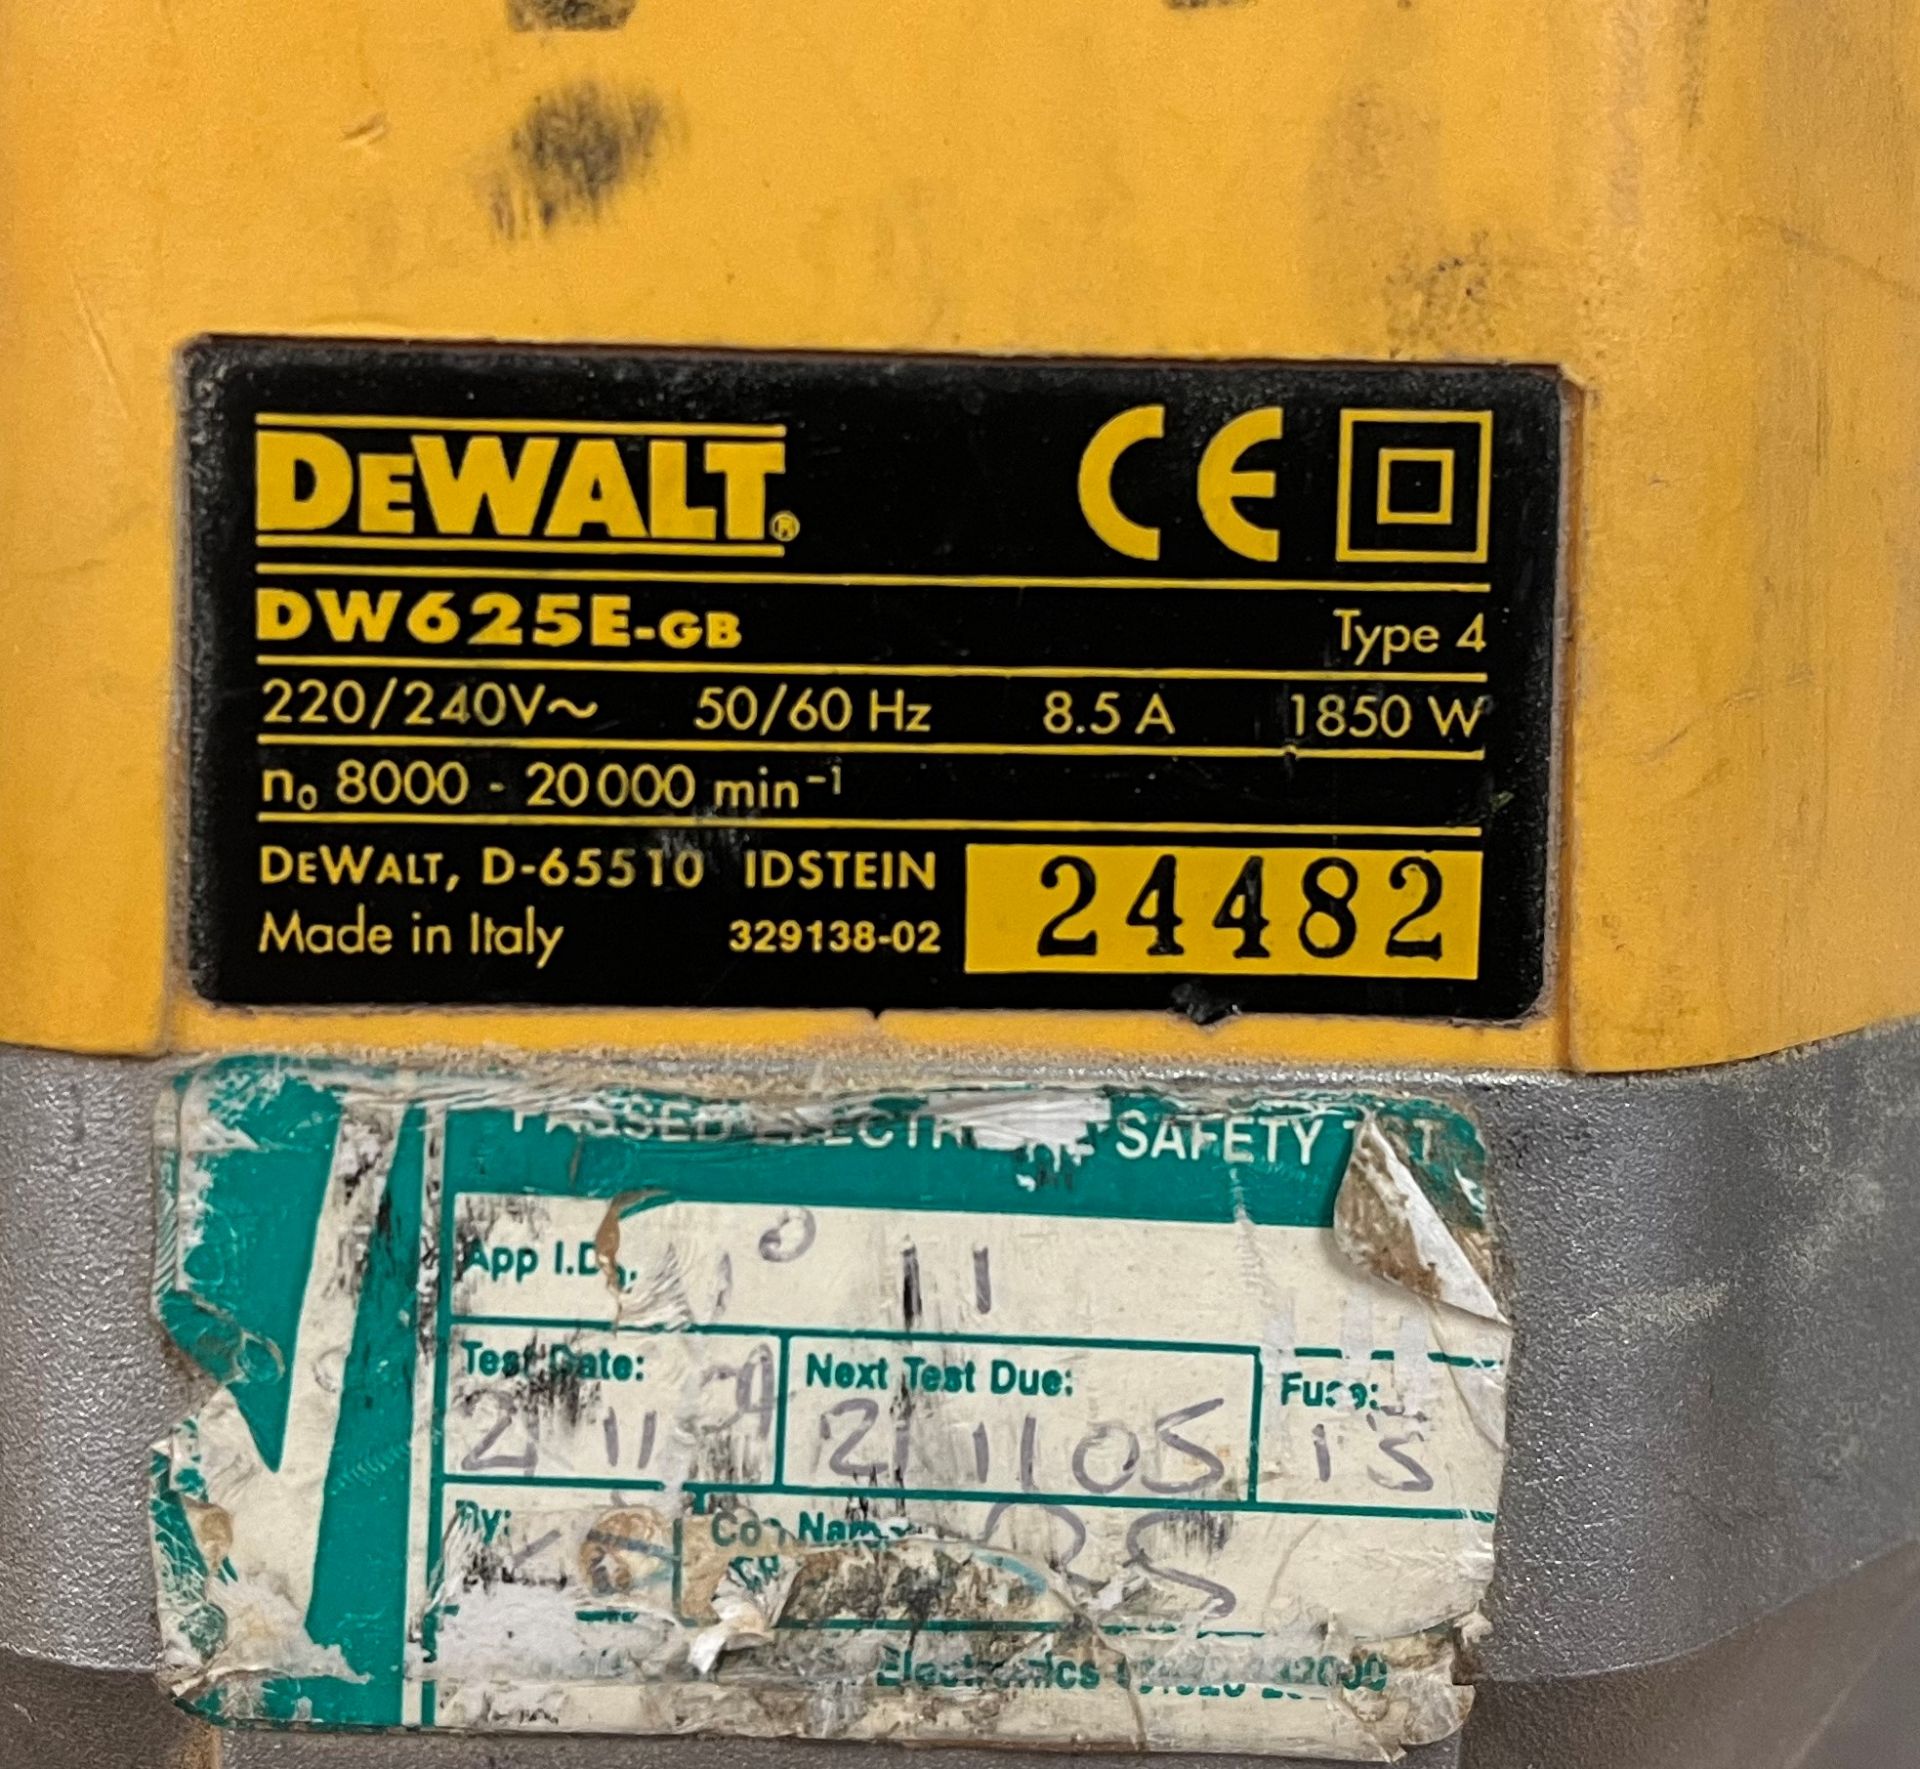 DeWalt DW625E Router - Image 3 of 4